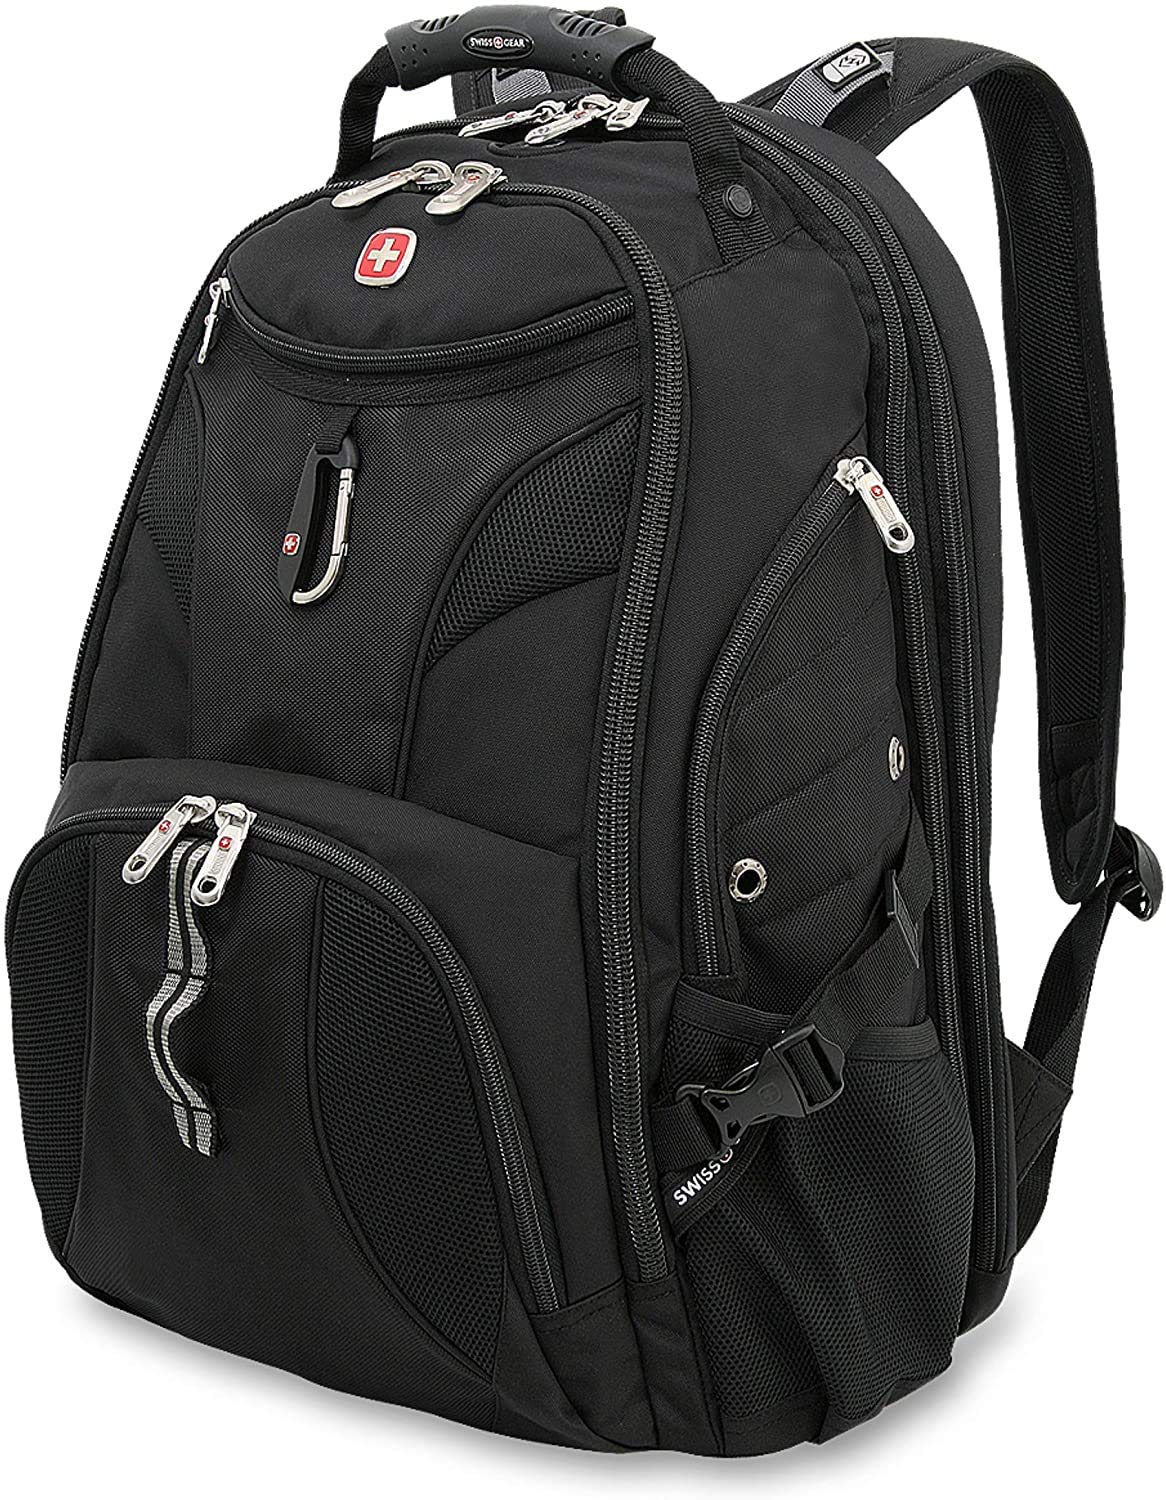 SwissGear 1900 Scansmart TSA 17 Laptop Backpack, Black, 19-Inch $64